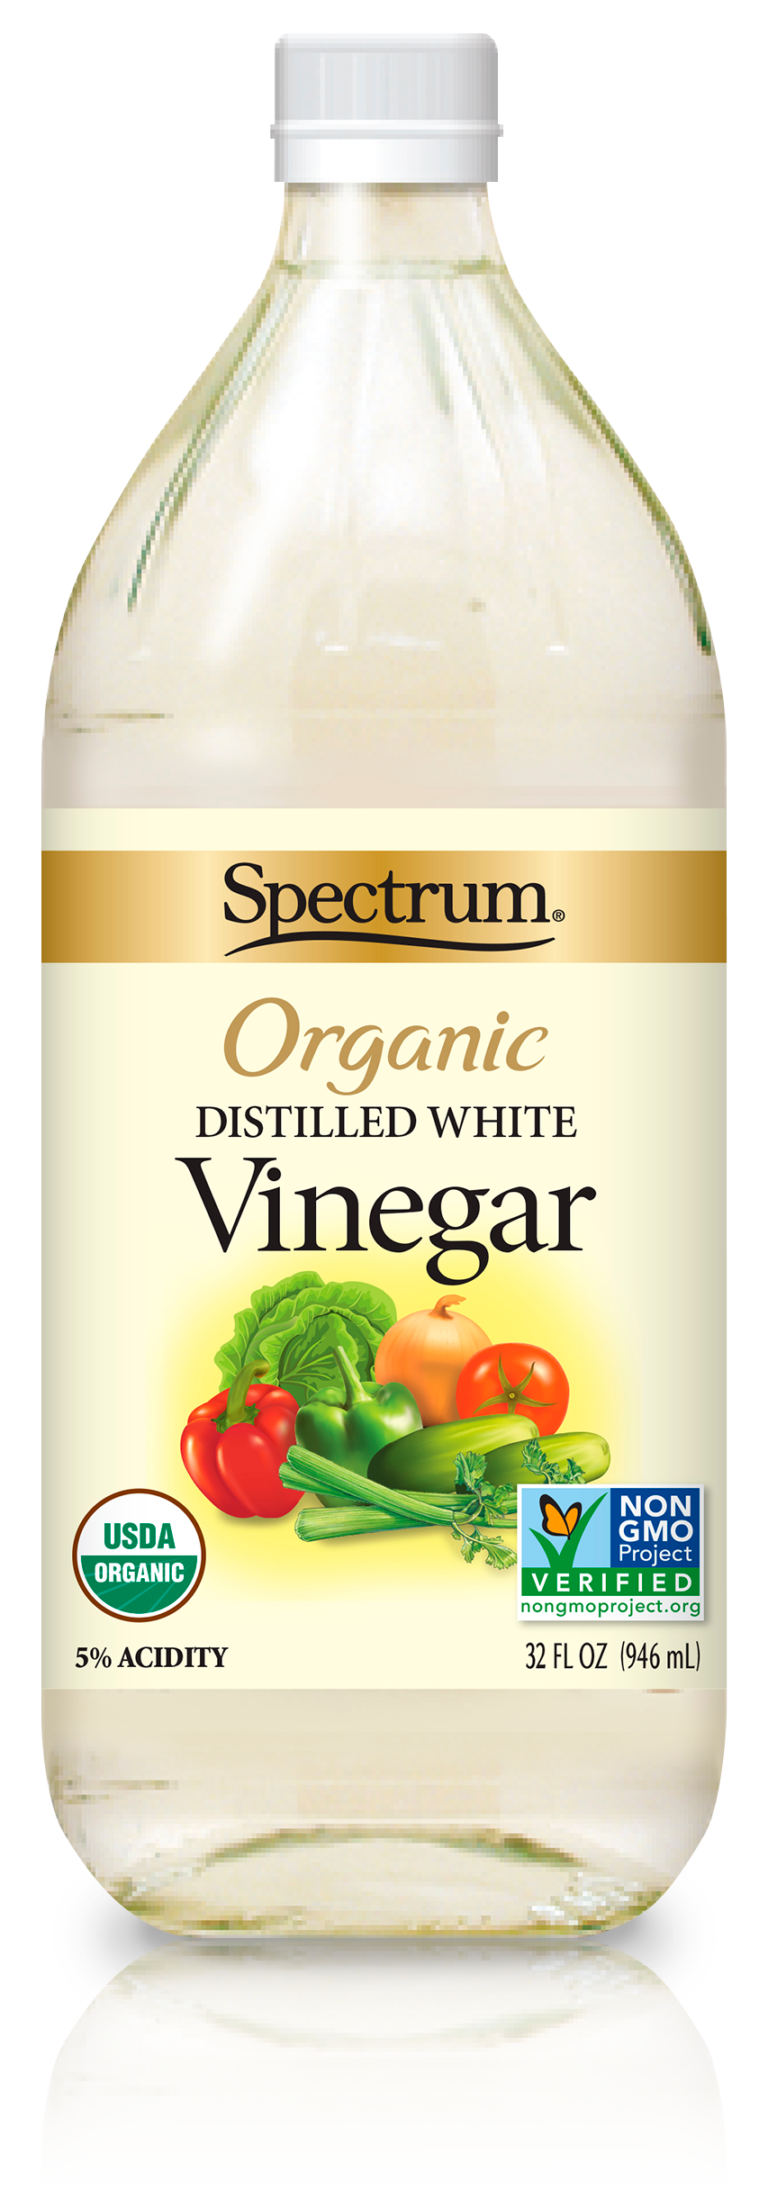 Organic Distilled White Vinegar Spectrum